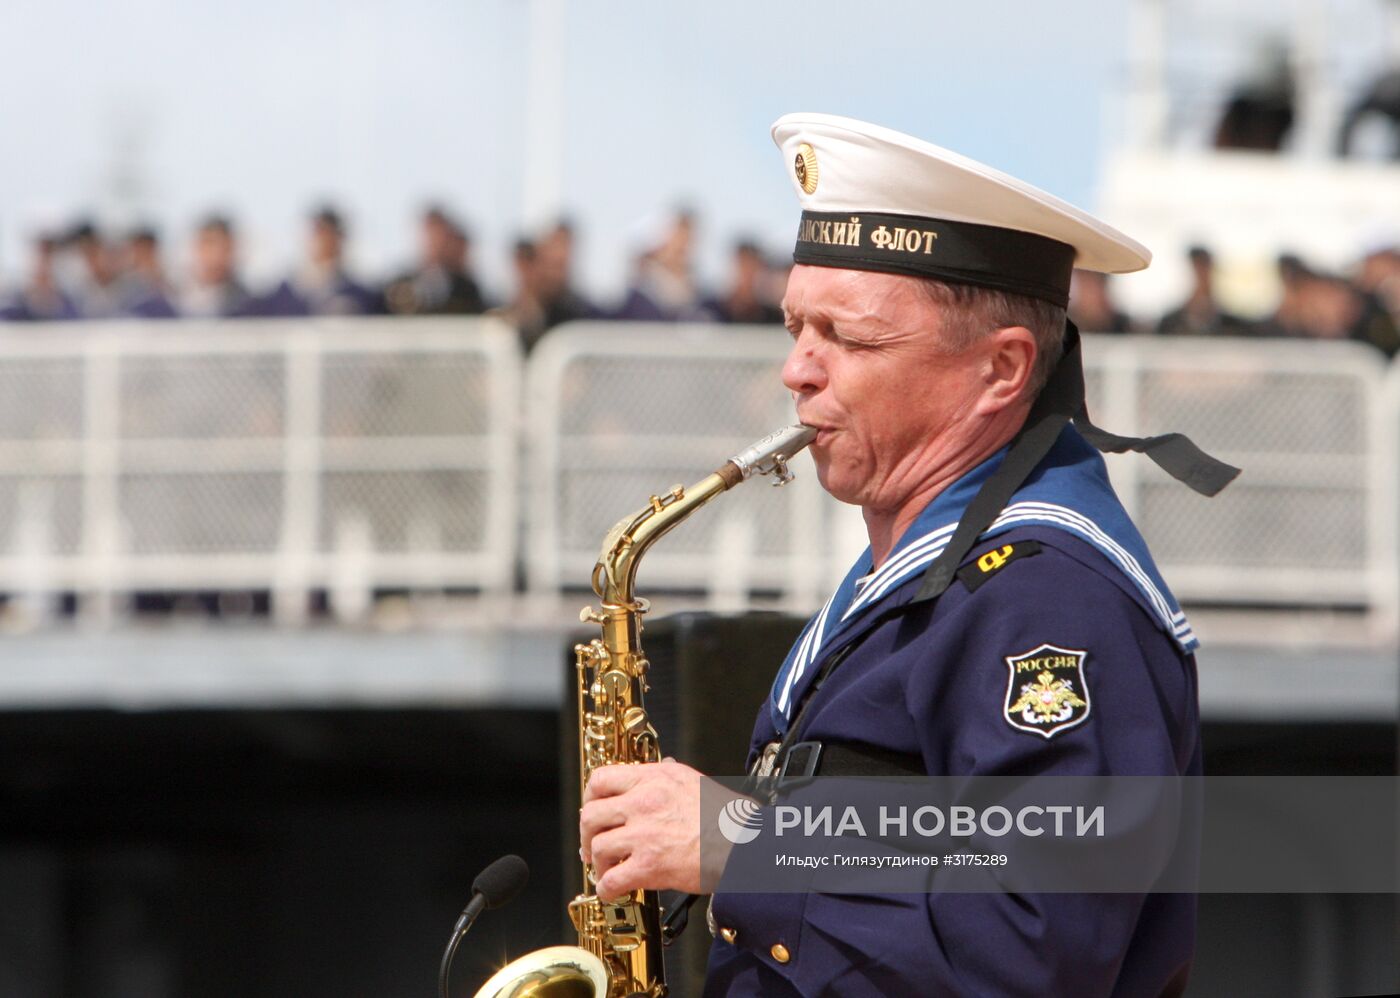 Открытие форума "Армия-2017" во Владивостоке